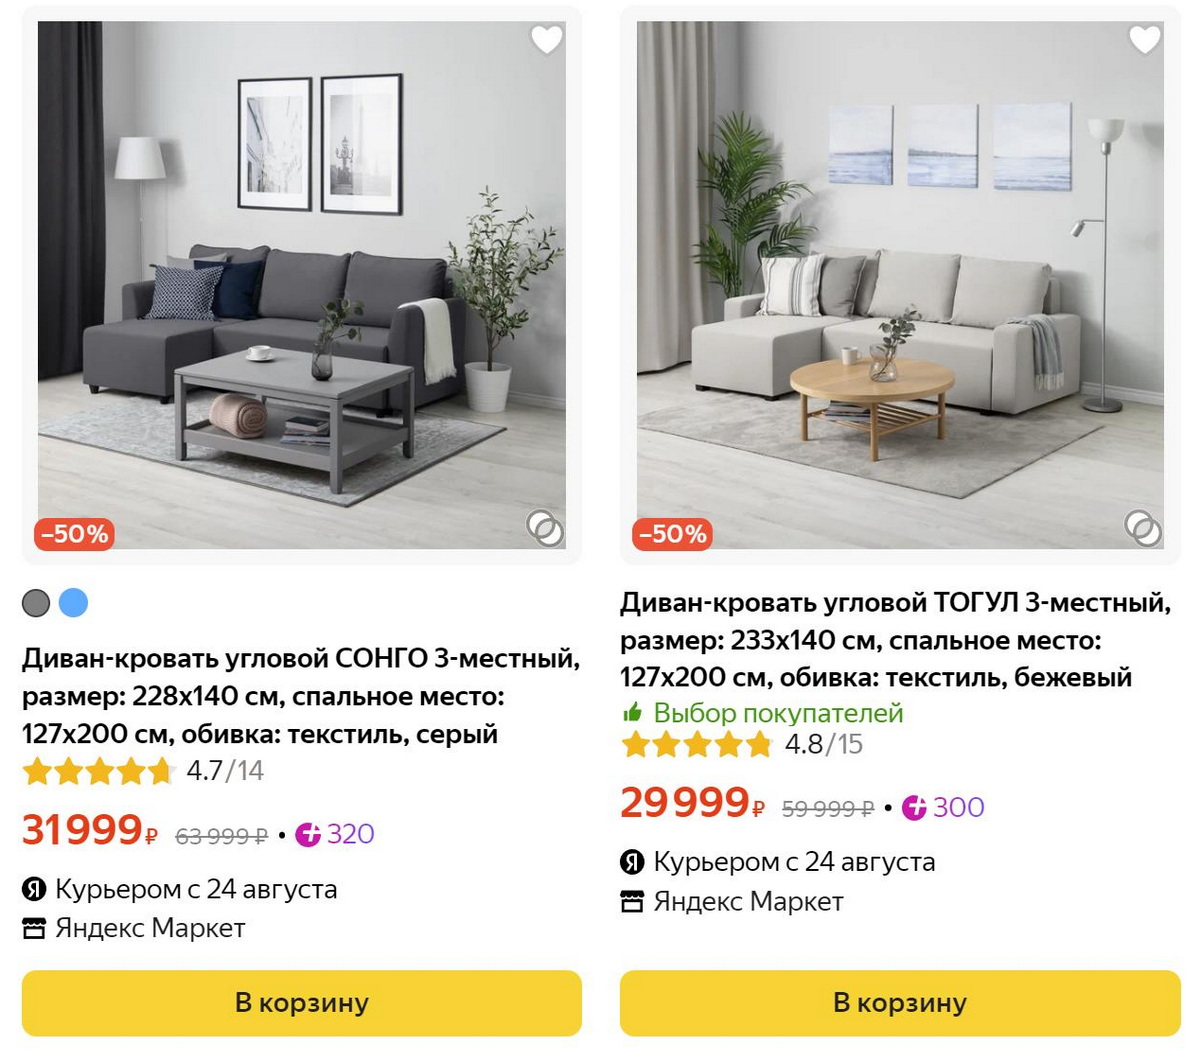 Поставщики мебели в россии